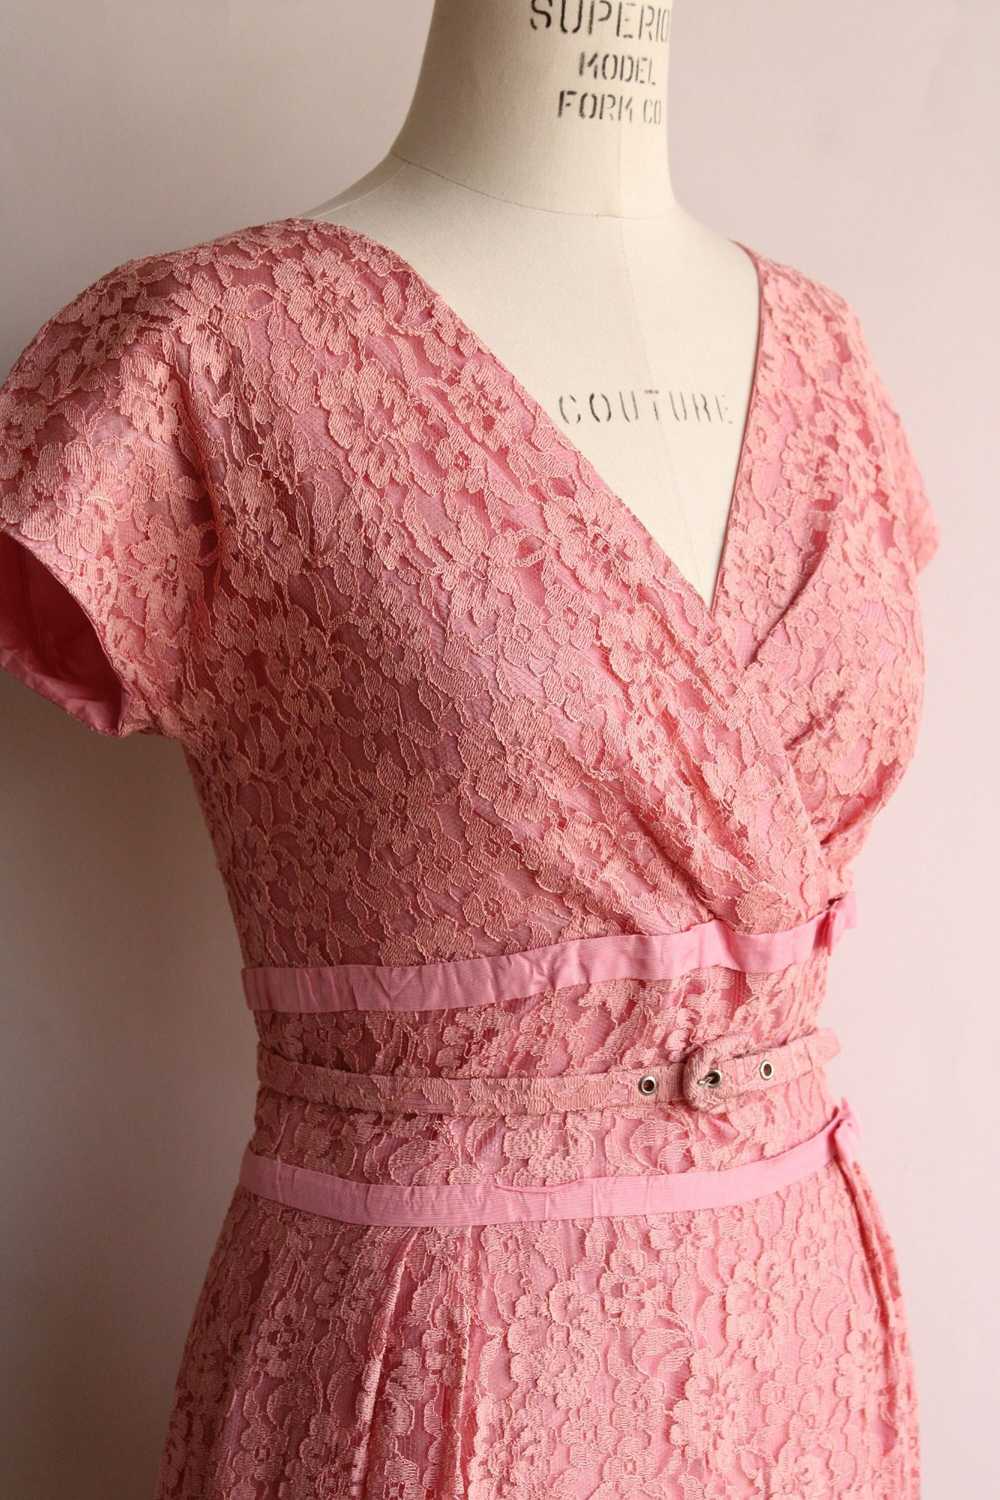 Vintage Vintage 1940s 1950s Dress with Belt, Pink… - image 4